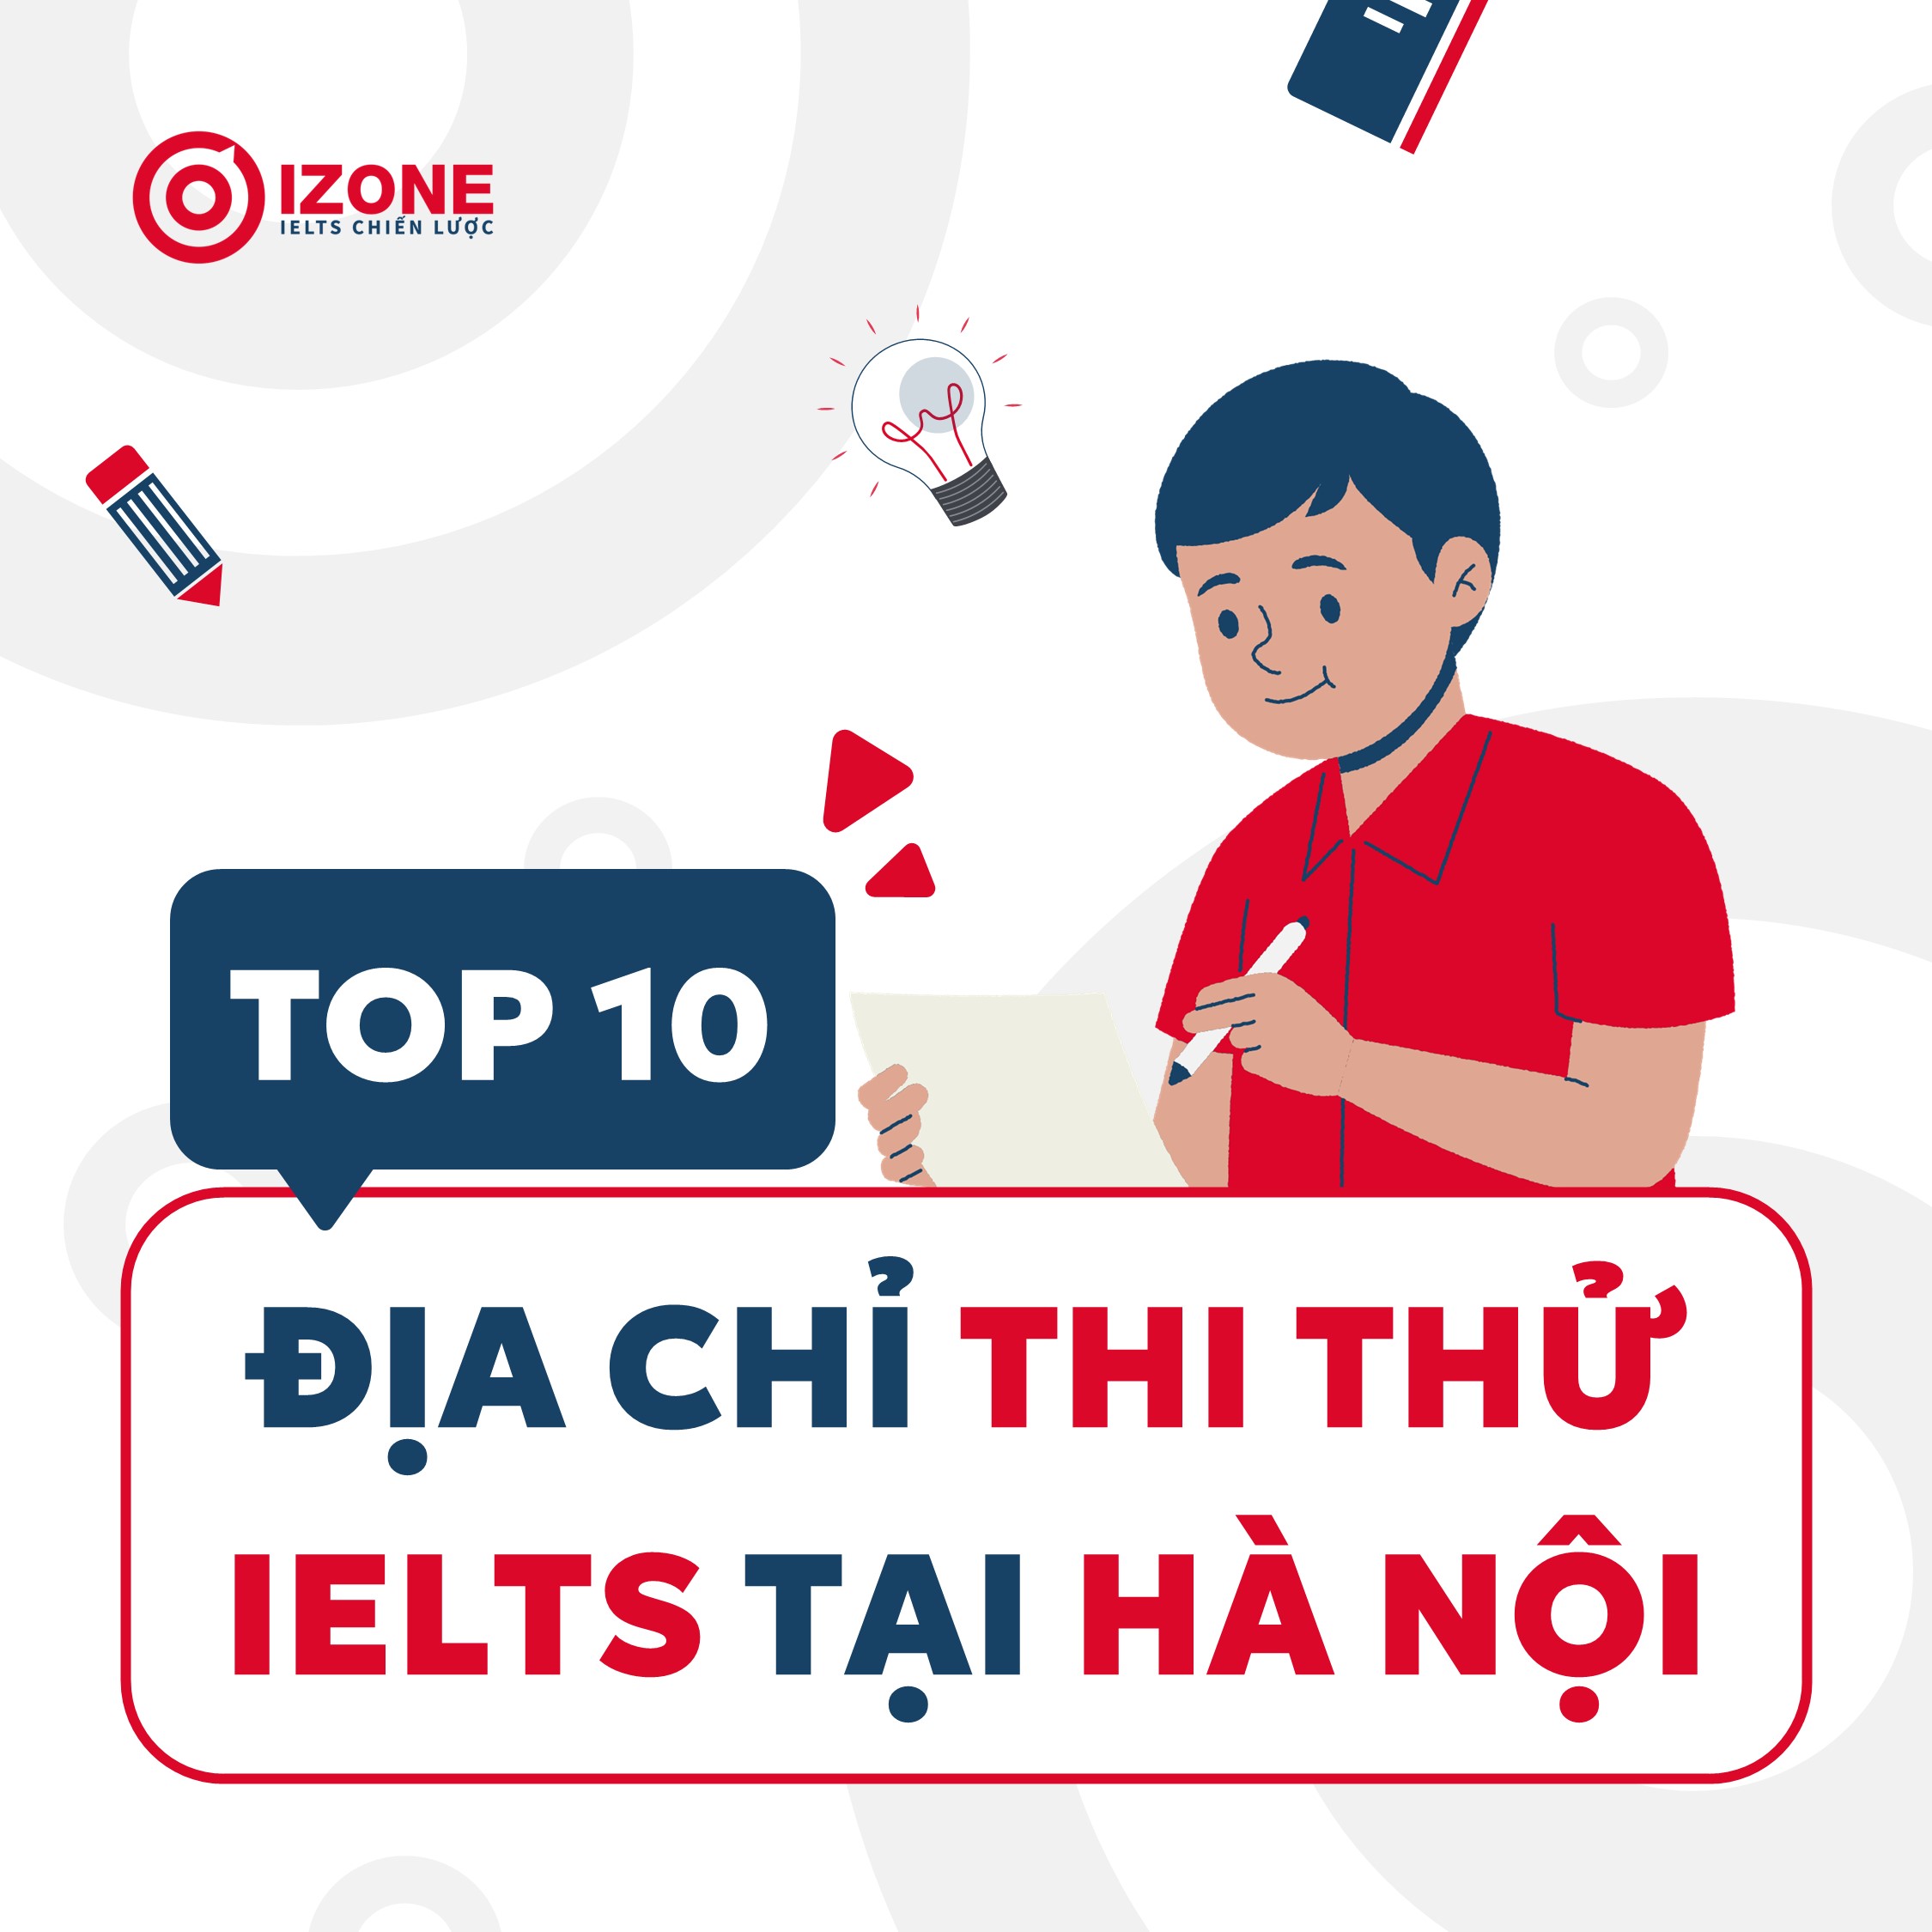 Thi thử IELTS ở đâu uy tín?  Top 10 địa chỉ  thi thử IELTS tại Hà Nội tốt nhất